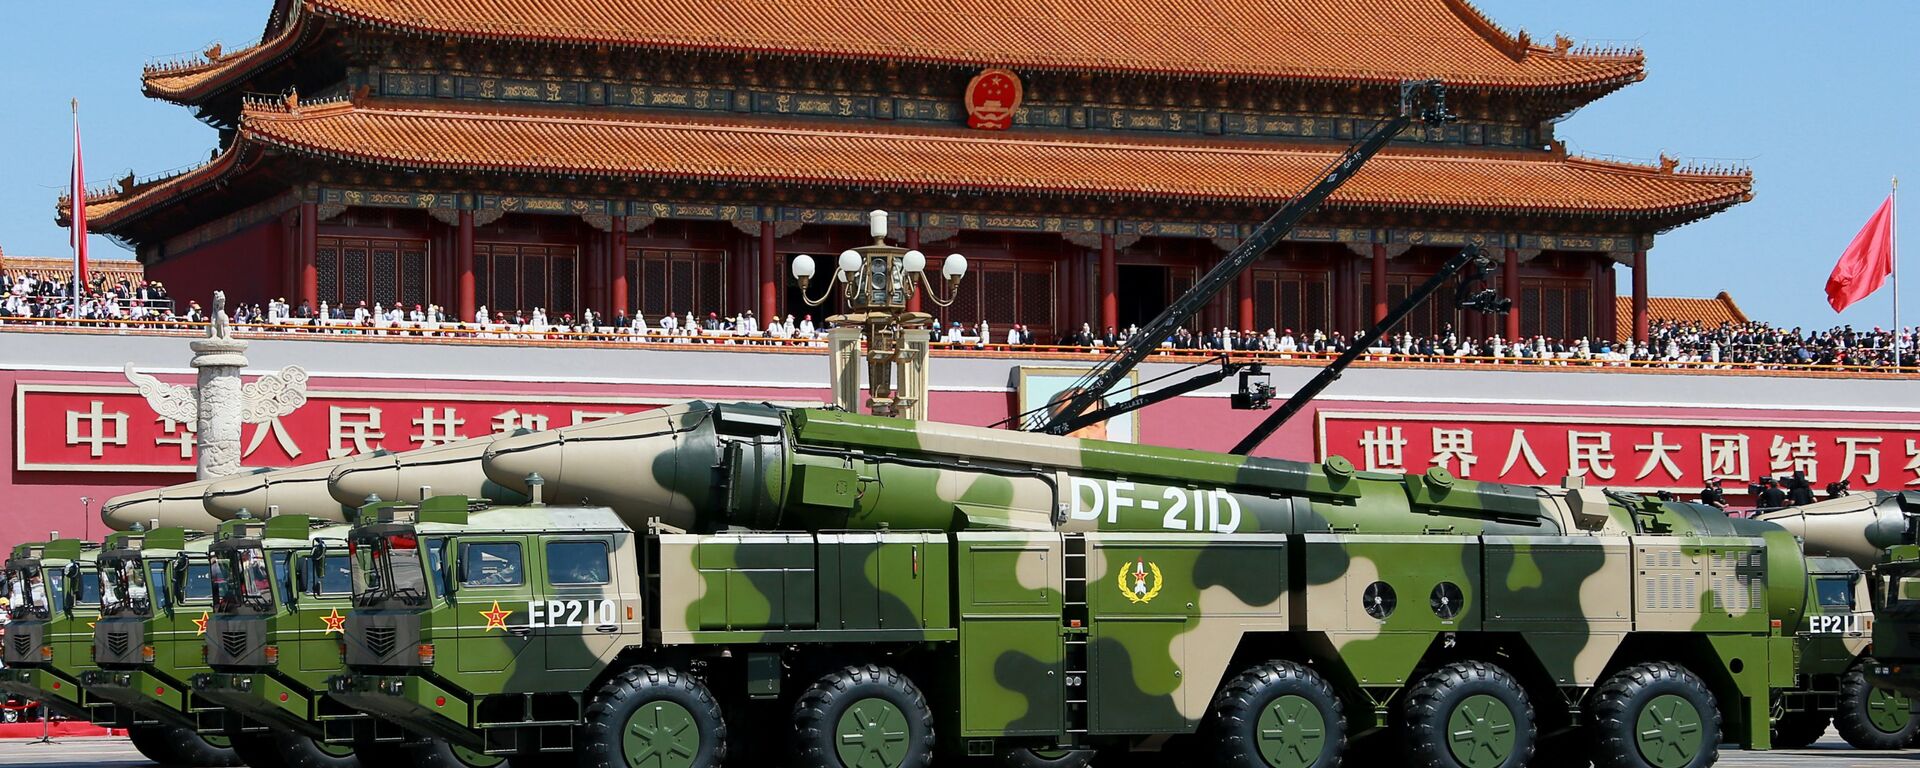 Hệ thống tên lửa đạn đạo chống hạm Dongfeng 21A (DF-21A) của Quân đội Giải phóng Nhân dân Trung Quốc - Sputnik Việt Nam, 1920, 02.08.2022